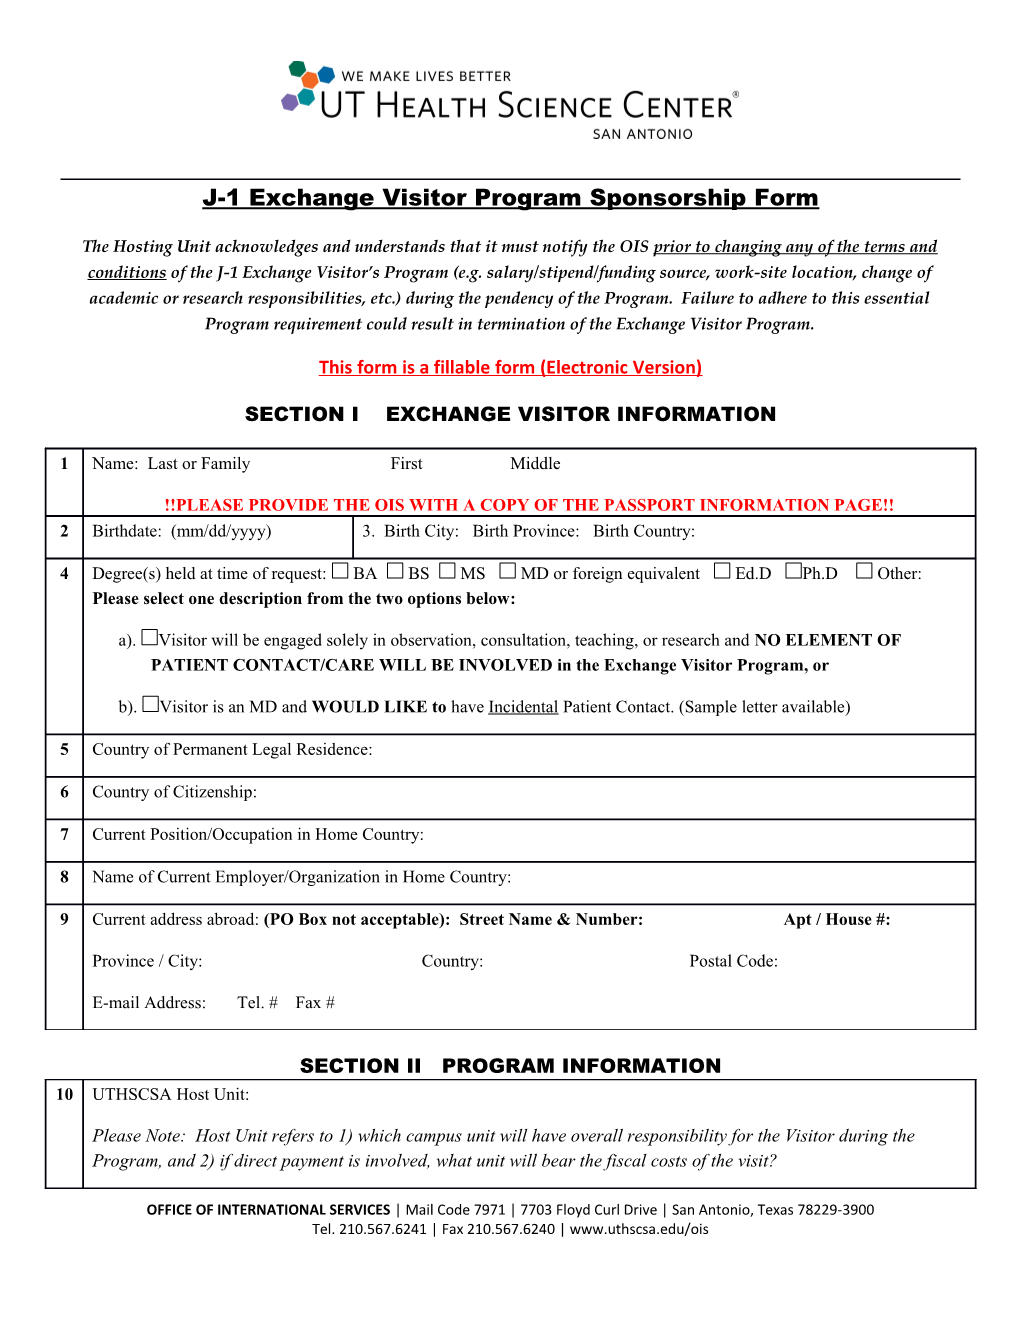 J-1 Exchange Visitor Program Sponsorship Form